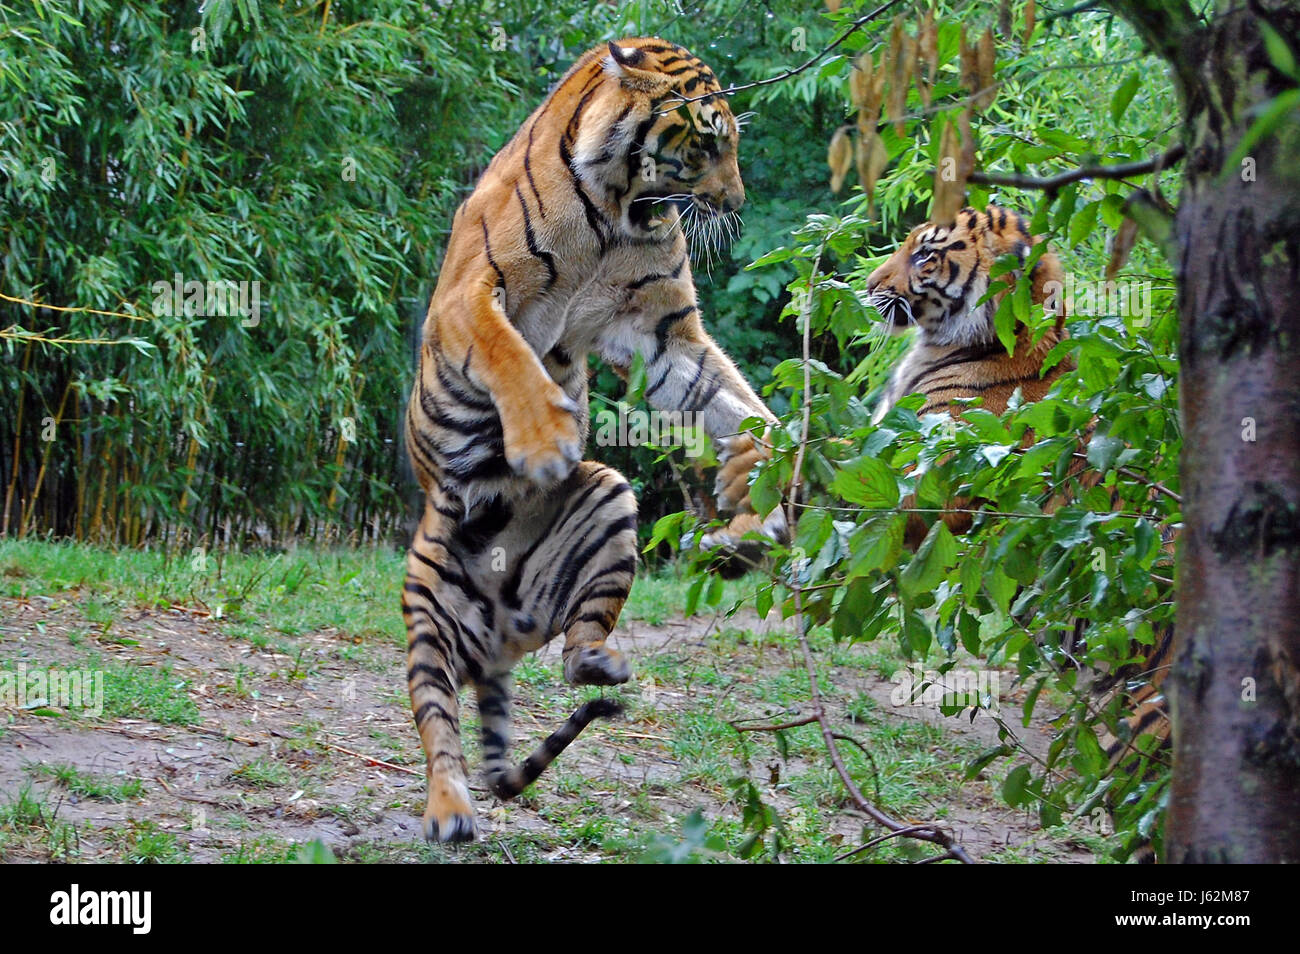 Lotta lotta animale mammifero cat gatto grande predatore felino tiger pelle predator Foto Stock